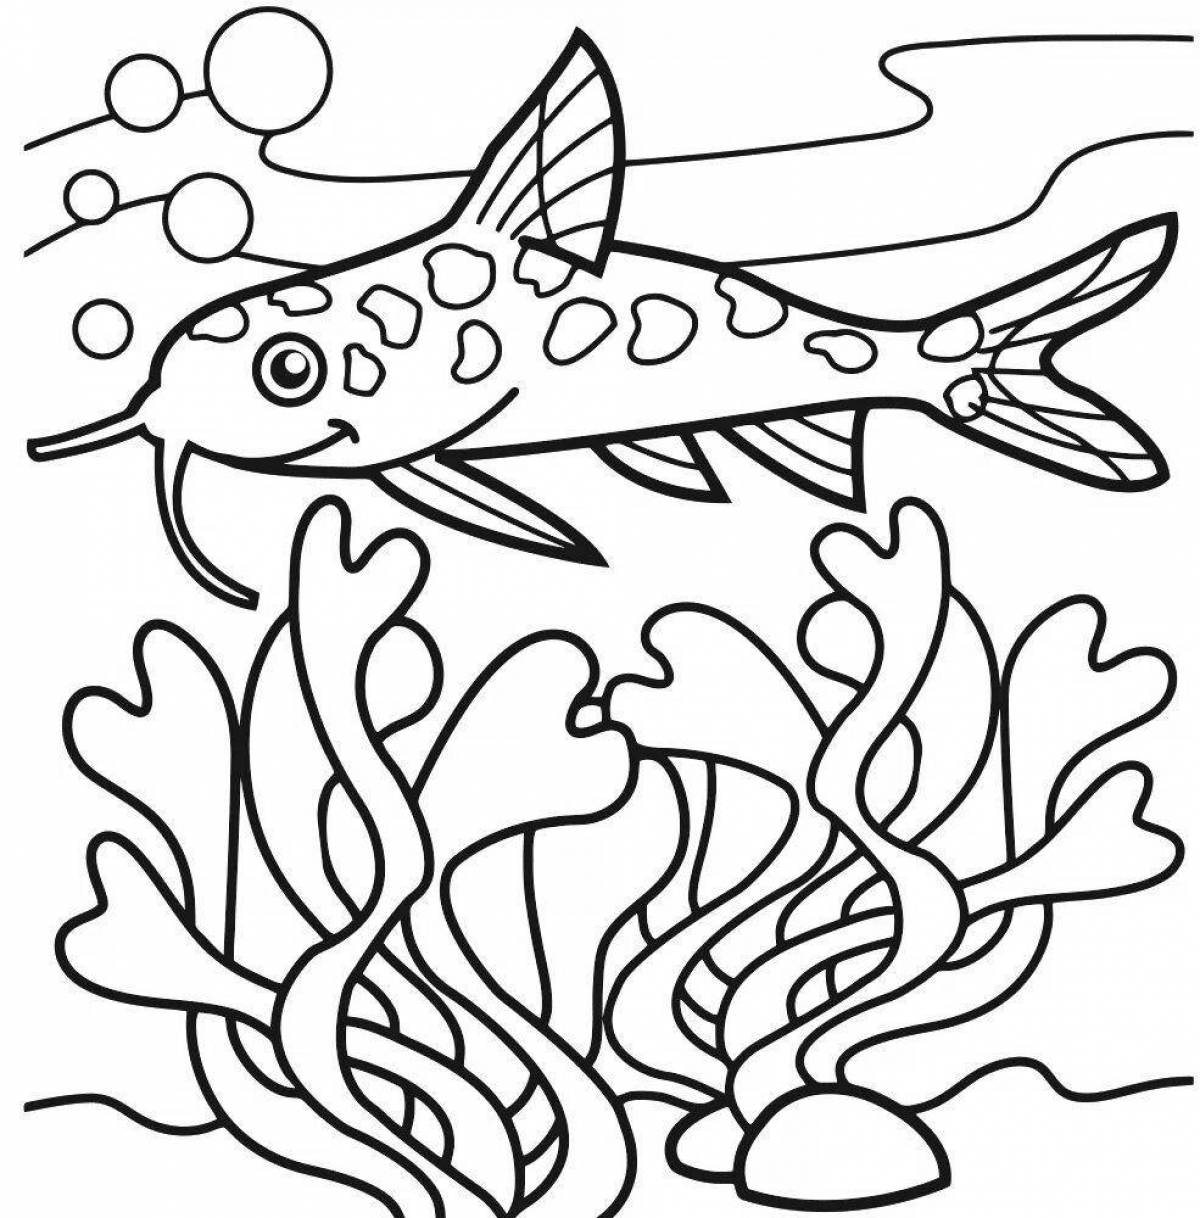 Рыбка сомик аквариумный раскраска